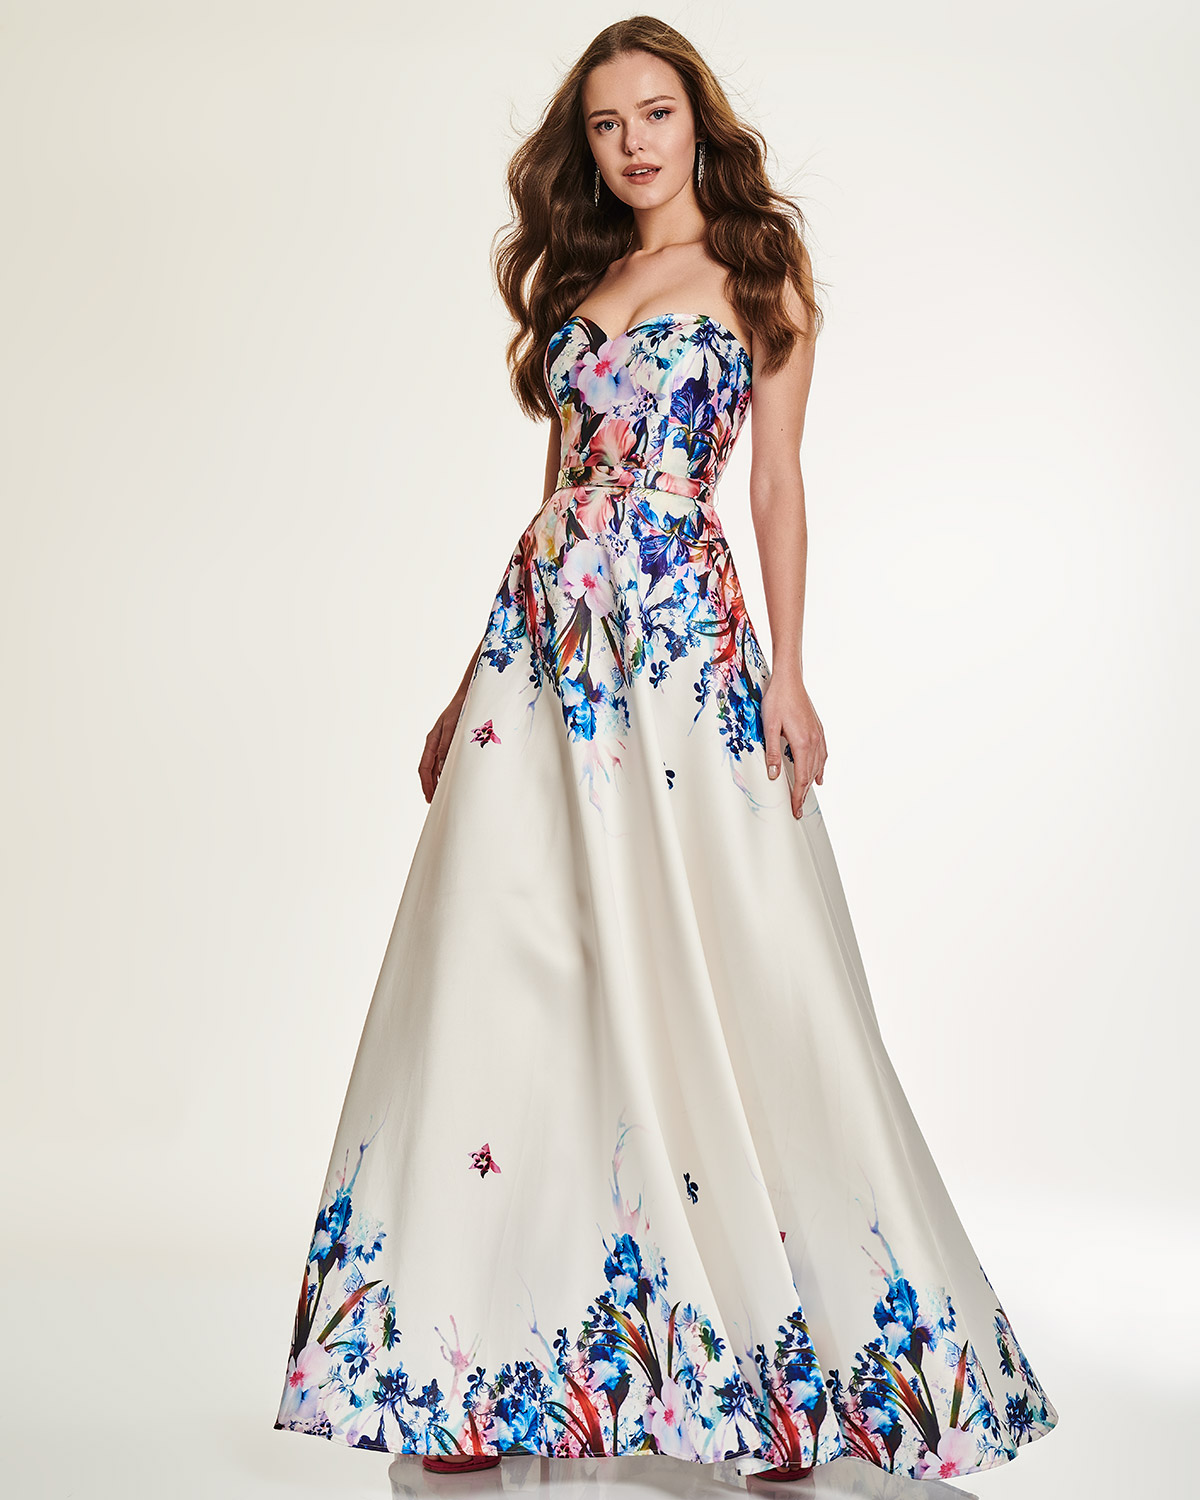 Κοκτέιλ Φορέματα / Κοκτέιλ μακρύ στράπλες φόρεμα με φλοράλ μοτίβο